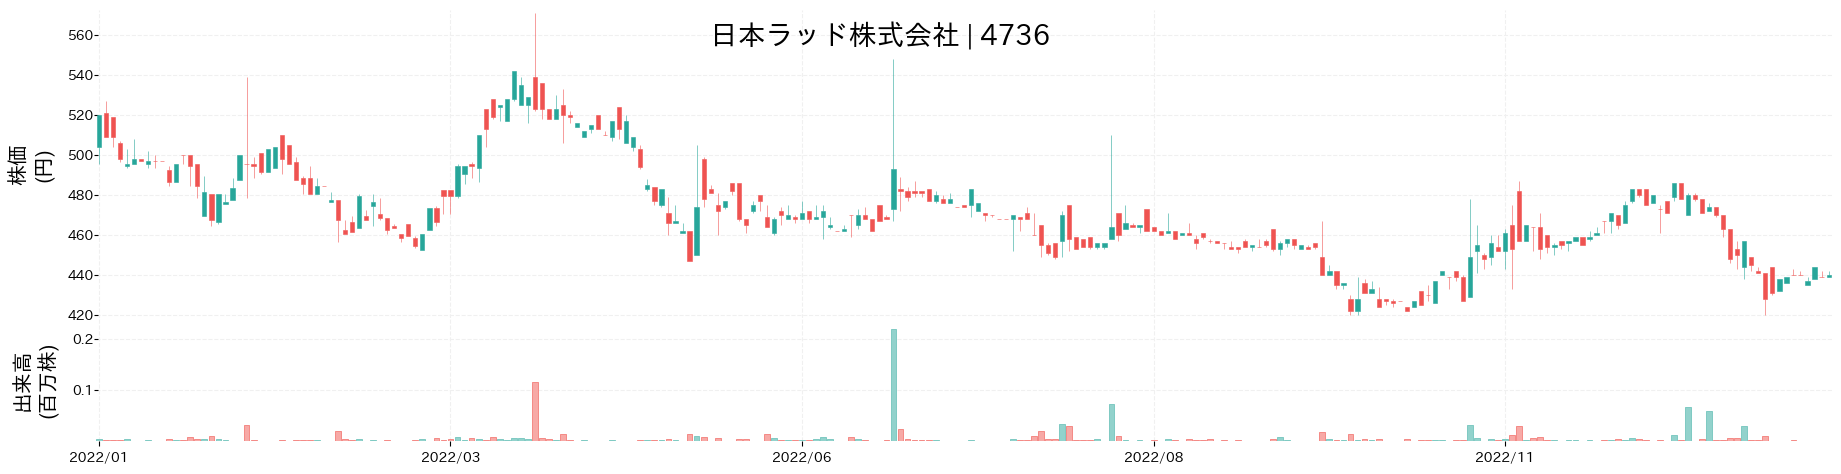 日本ラッドの株価推移(2022)